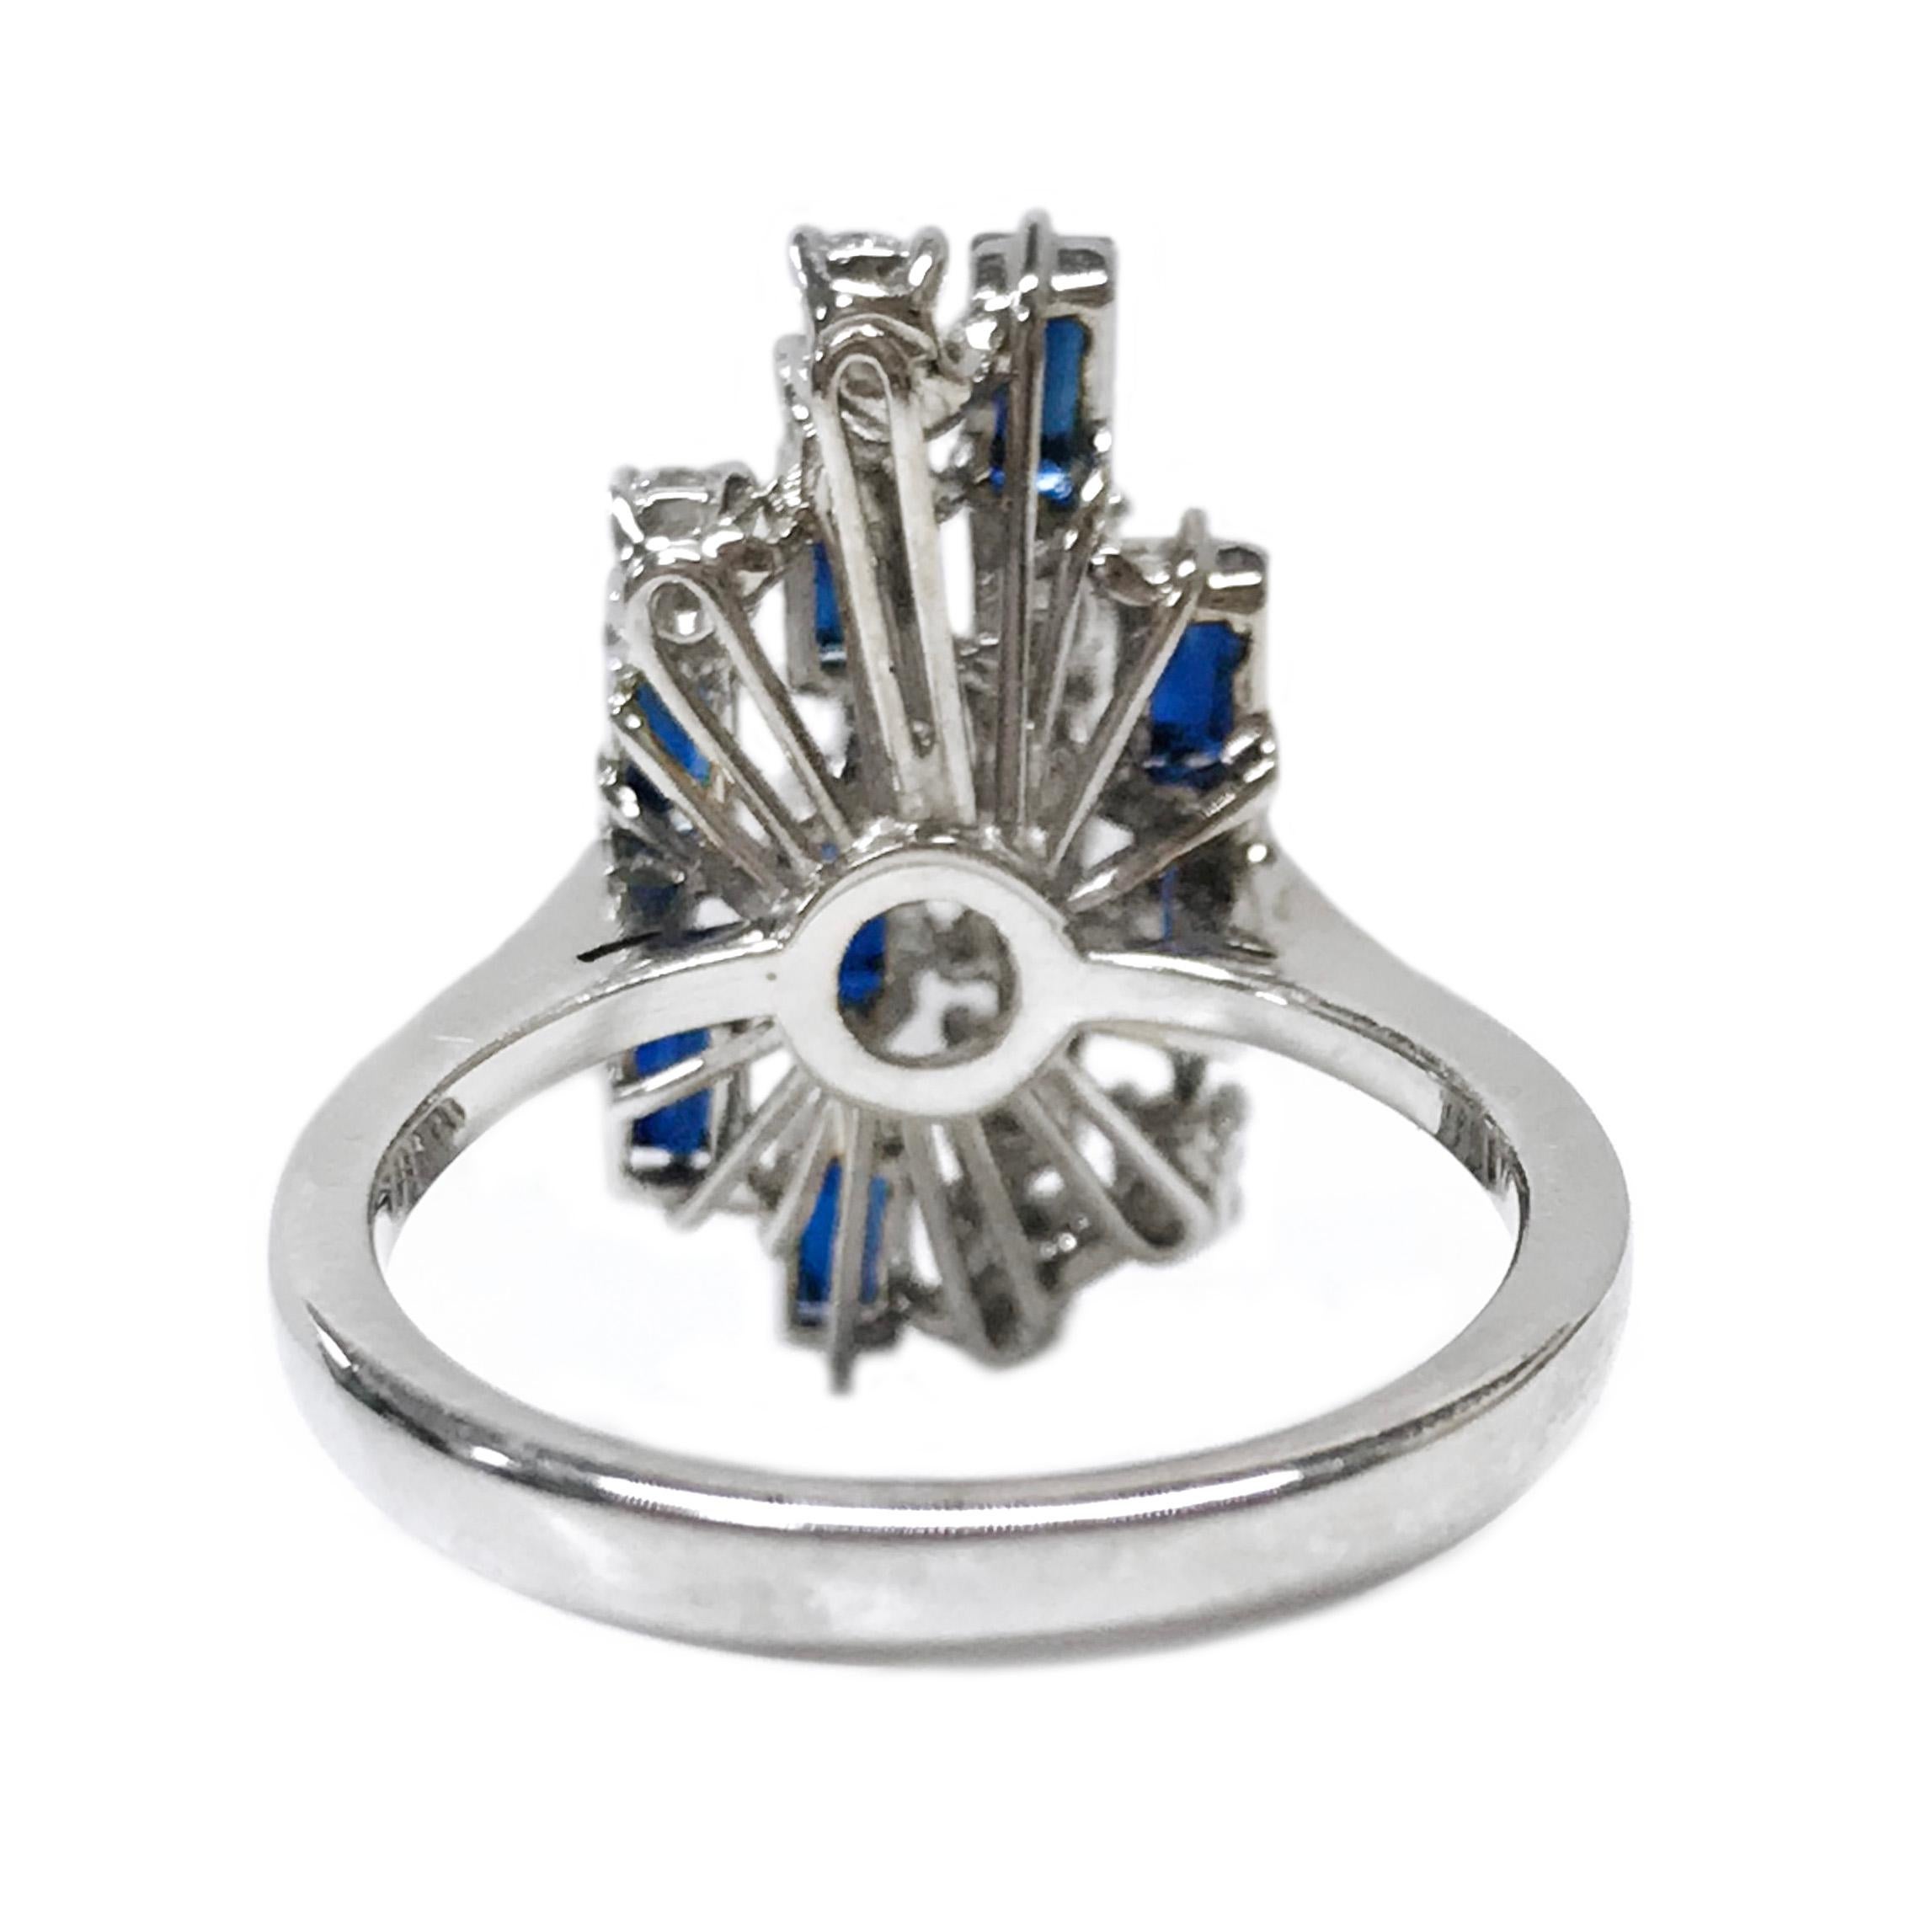 Retro White Gold Diamond Blue Sapphire Emerald-Cut Ring For Sale